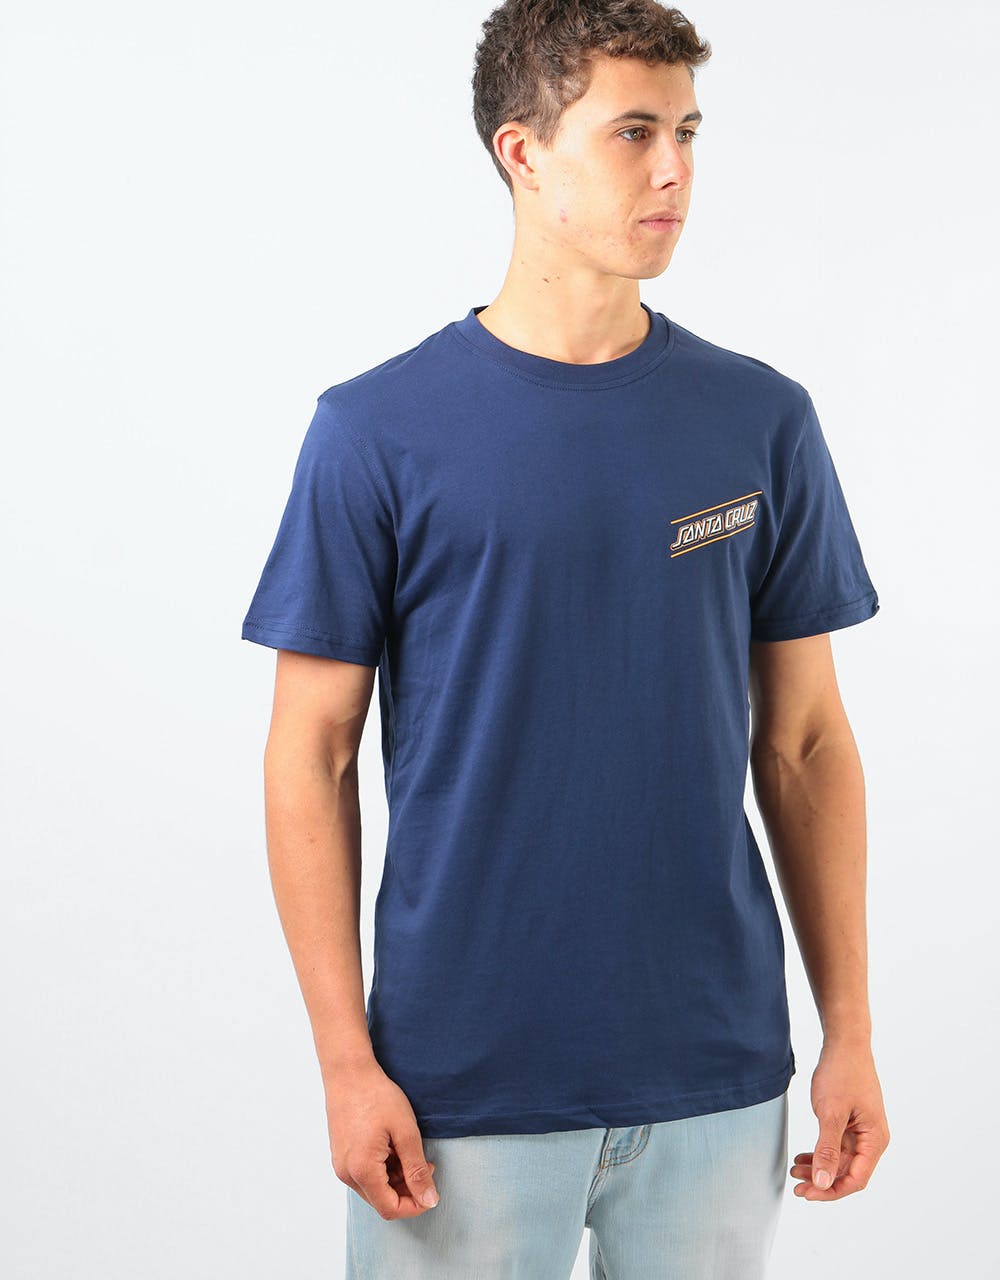 Santa Cruz Multi Strip T-Shirt - Dark Navy